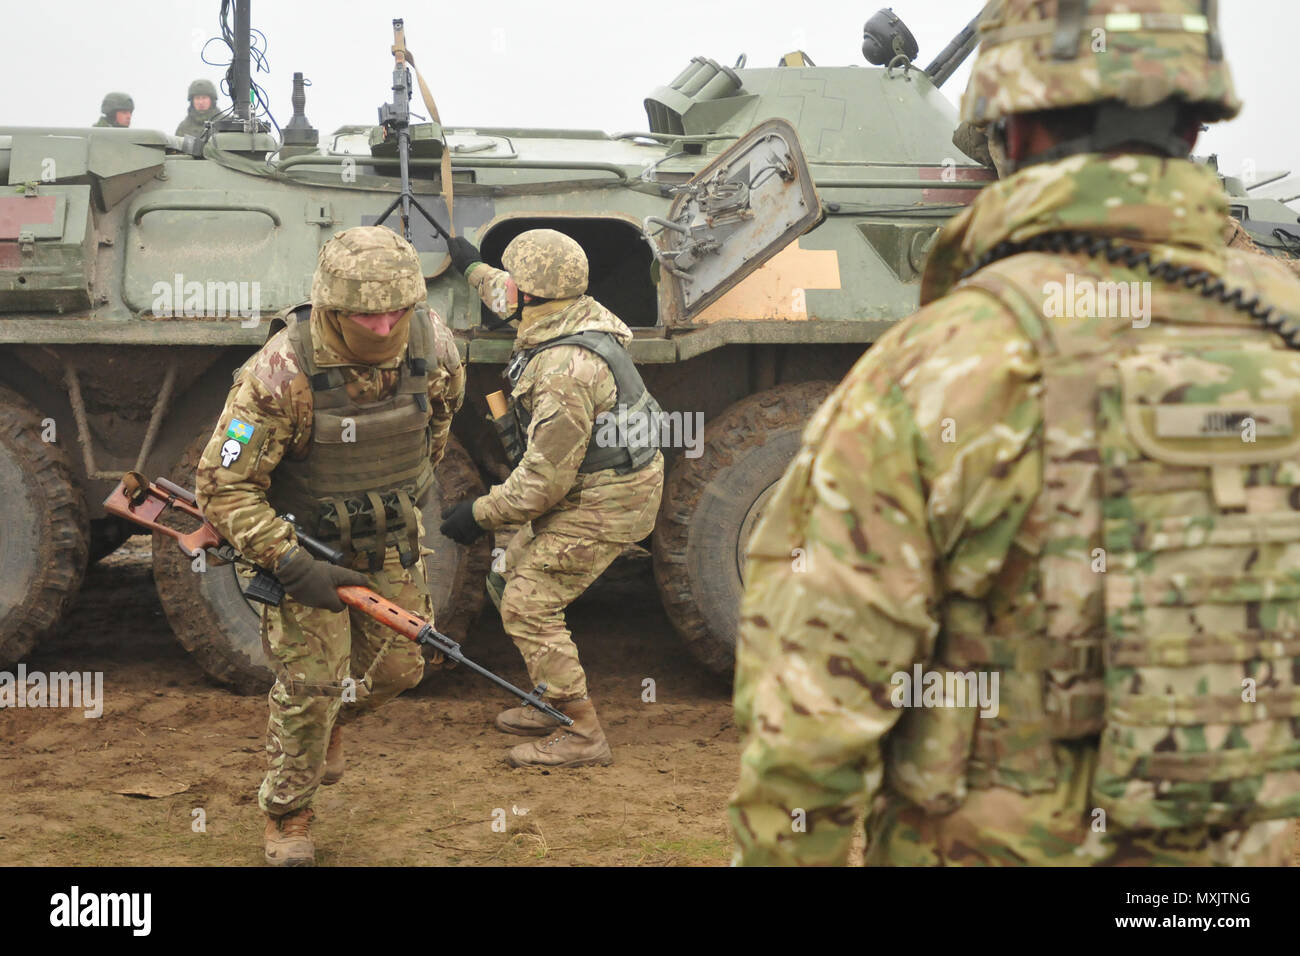 La 1ère Armée américaine Sgt. Jovanny Jones observe les soldats ukrainiens affectés au 1er Bataillon, 80e brigade aéromobile le démontage d'un véhicule blindé BTR ukrainien pendant un exercice d'entraînement au maintien de la paix internationale et la sécurité dans l'viv, Ukraine, le 12 novembre 2016. Soldats affectés à la 6e Escadron, 8e régiment de cavalerie, l'équipe de combat de la 2e Brigade d'infanterie, 3ème Division d'infanterie est déployée à l'appui de la formation Group-Ukraine multinationales conjointes. Le Group-Ukraine multinational interarmées fournit des soldats américains et le personnel des opérations spéciales pour former l'Ukraine Nat Banque D'Images